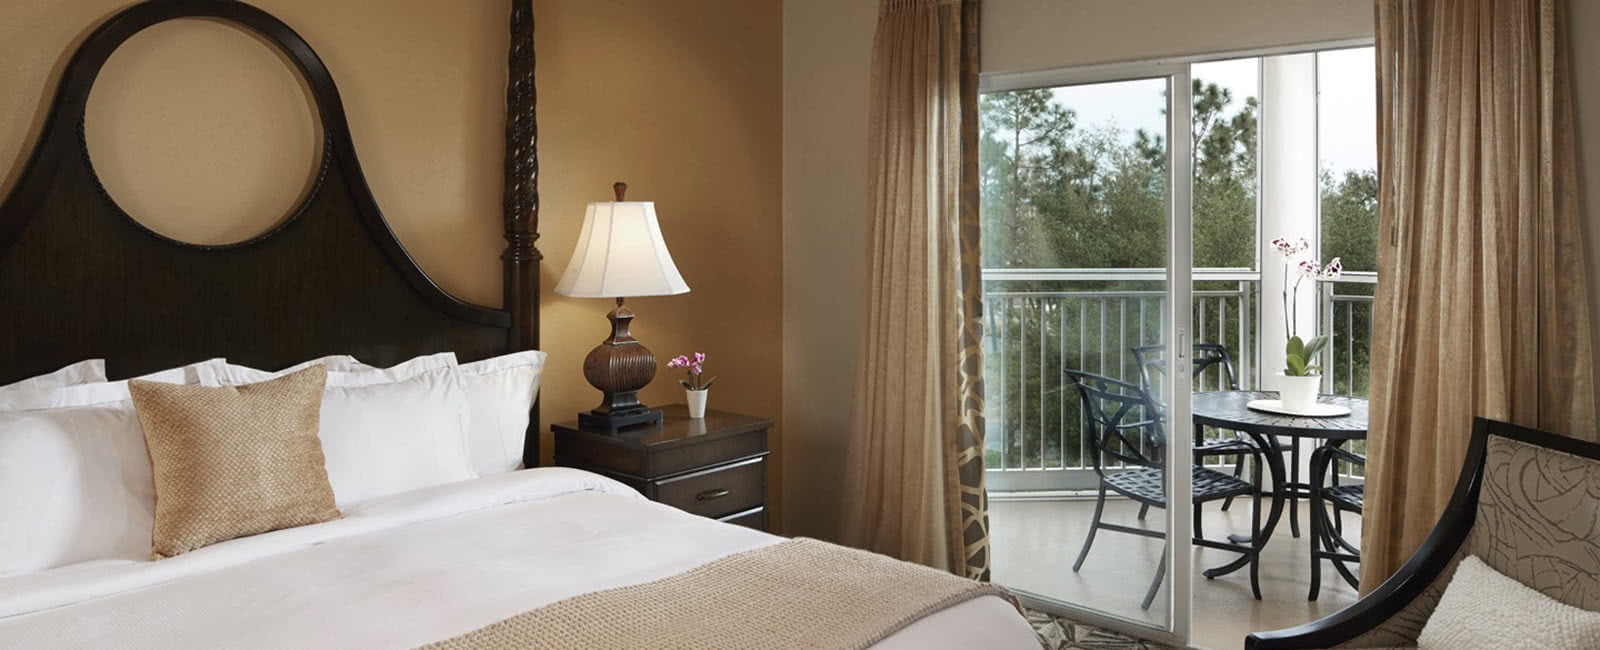 Bedroom at Hilton Grand Vacations Club at SeaWorld in Orlando, Florida